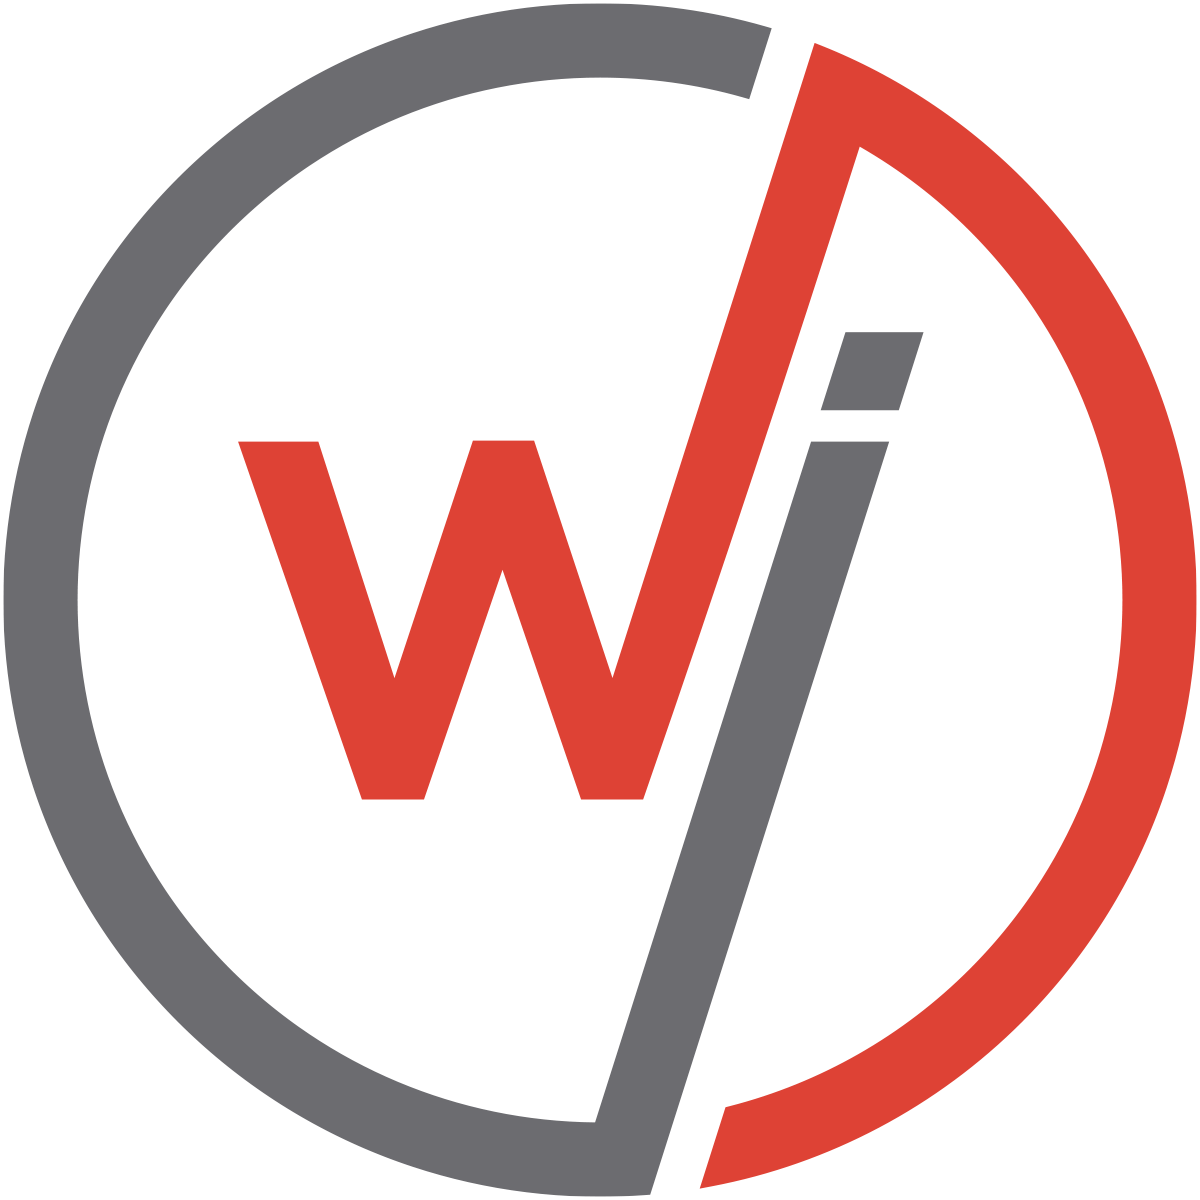 WebinarJam/EventWebinar--logo